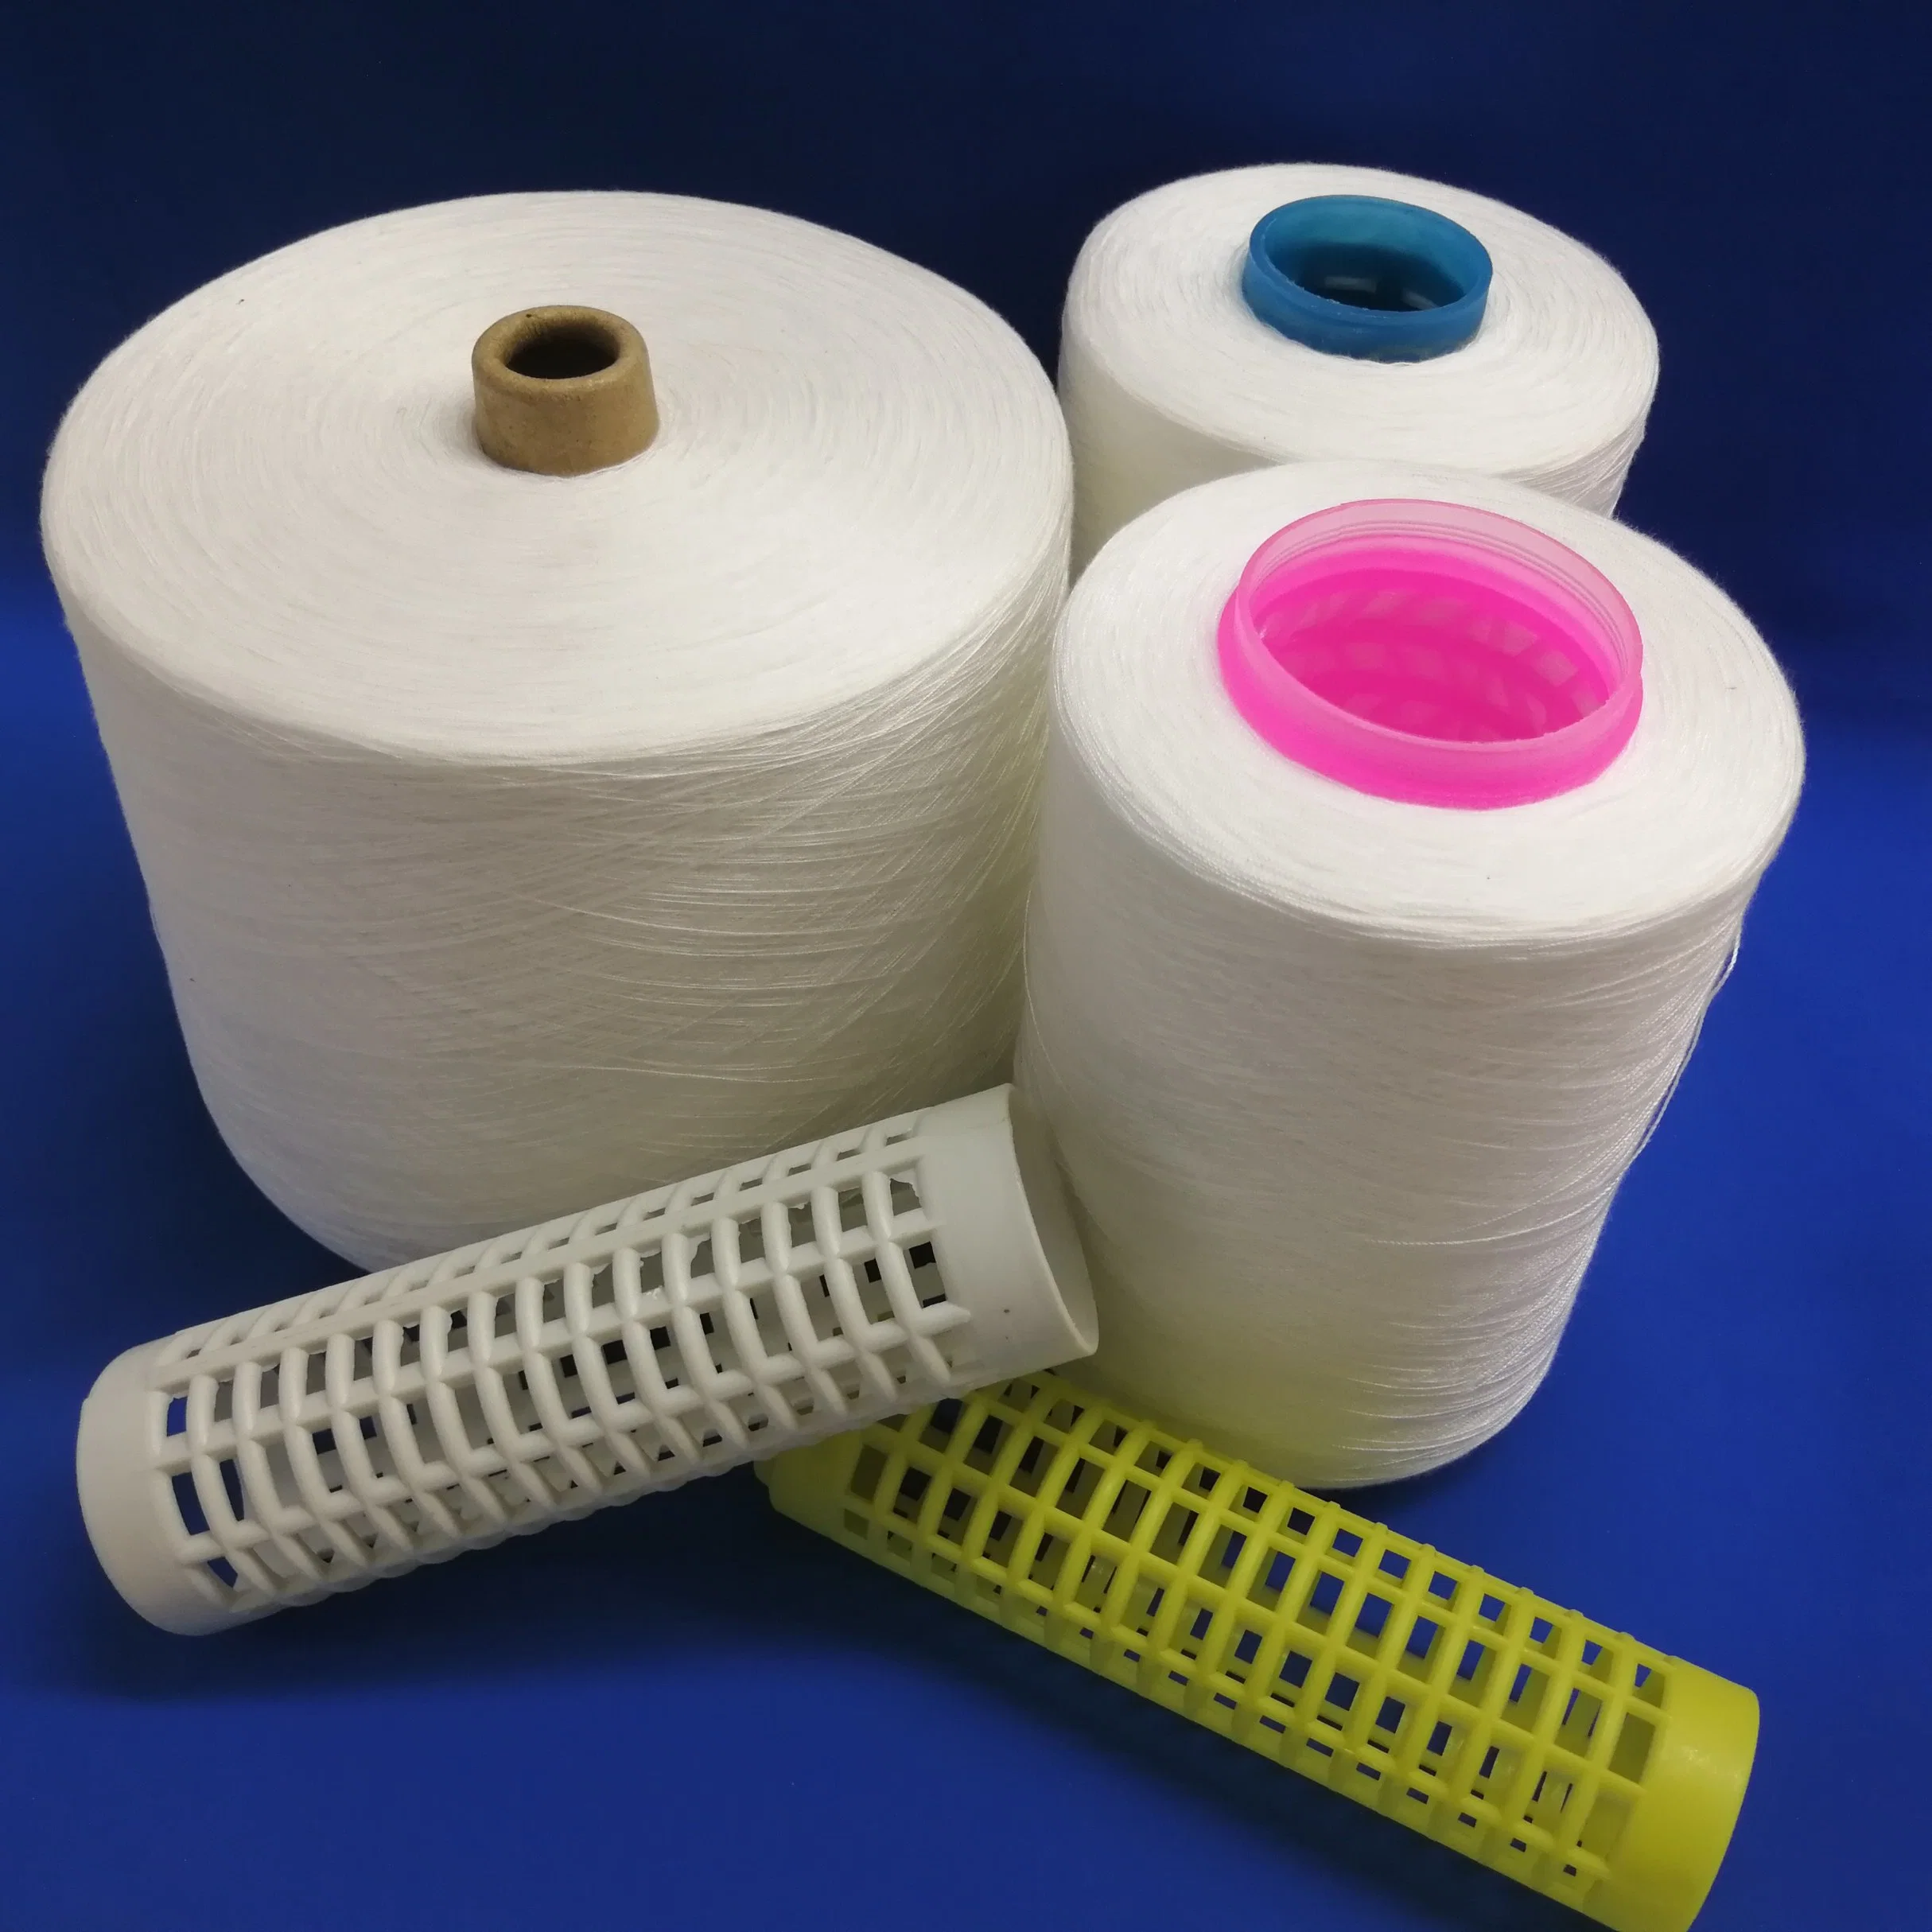 40/2 100% Spun Polyester Sewing Thread Wholesale/Supplier, Cheap Price Sewing Thread, Polyester Thread Sewing 100% Spun Polyester Yarn